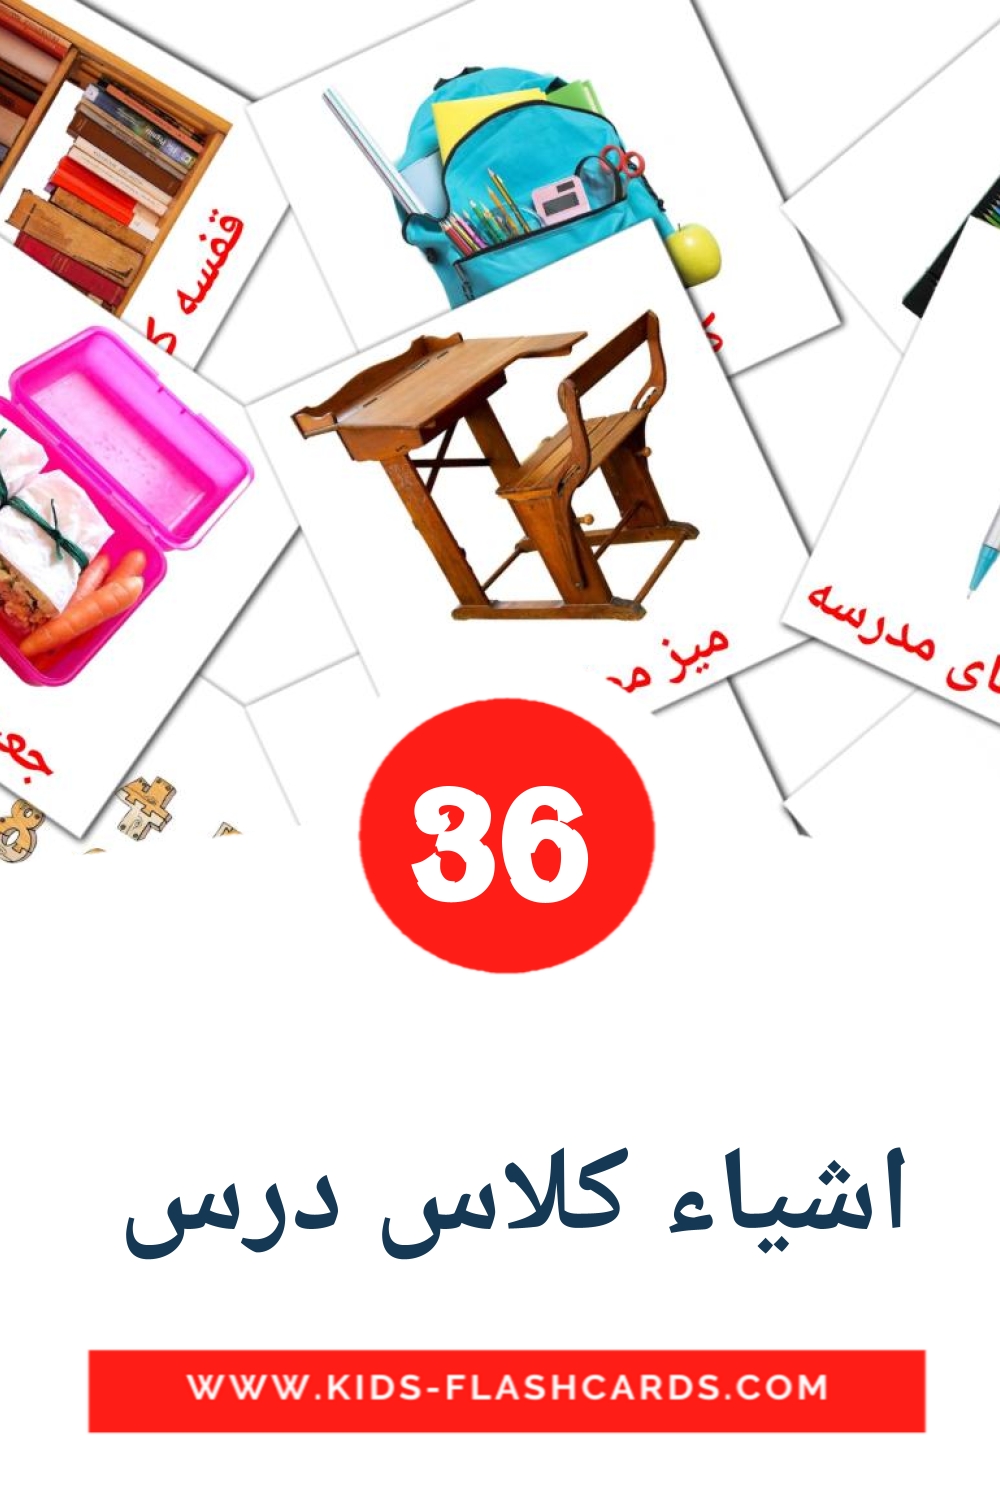 36 carte illustrate di اشیاء کلاس درس  per la scuola materna in persiano